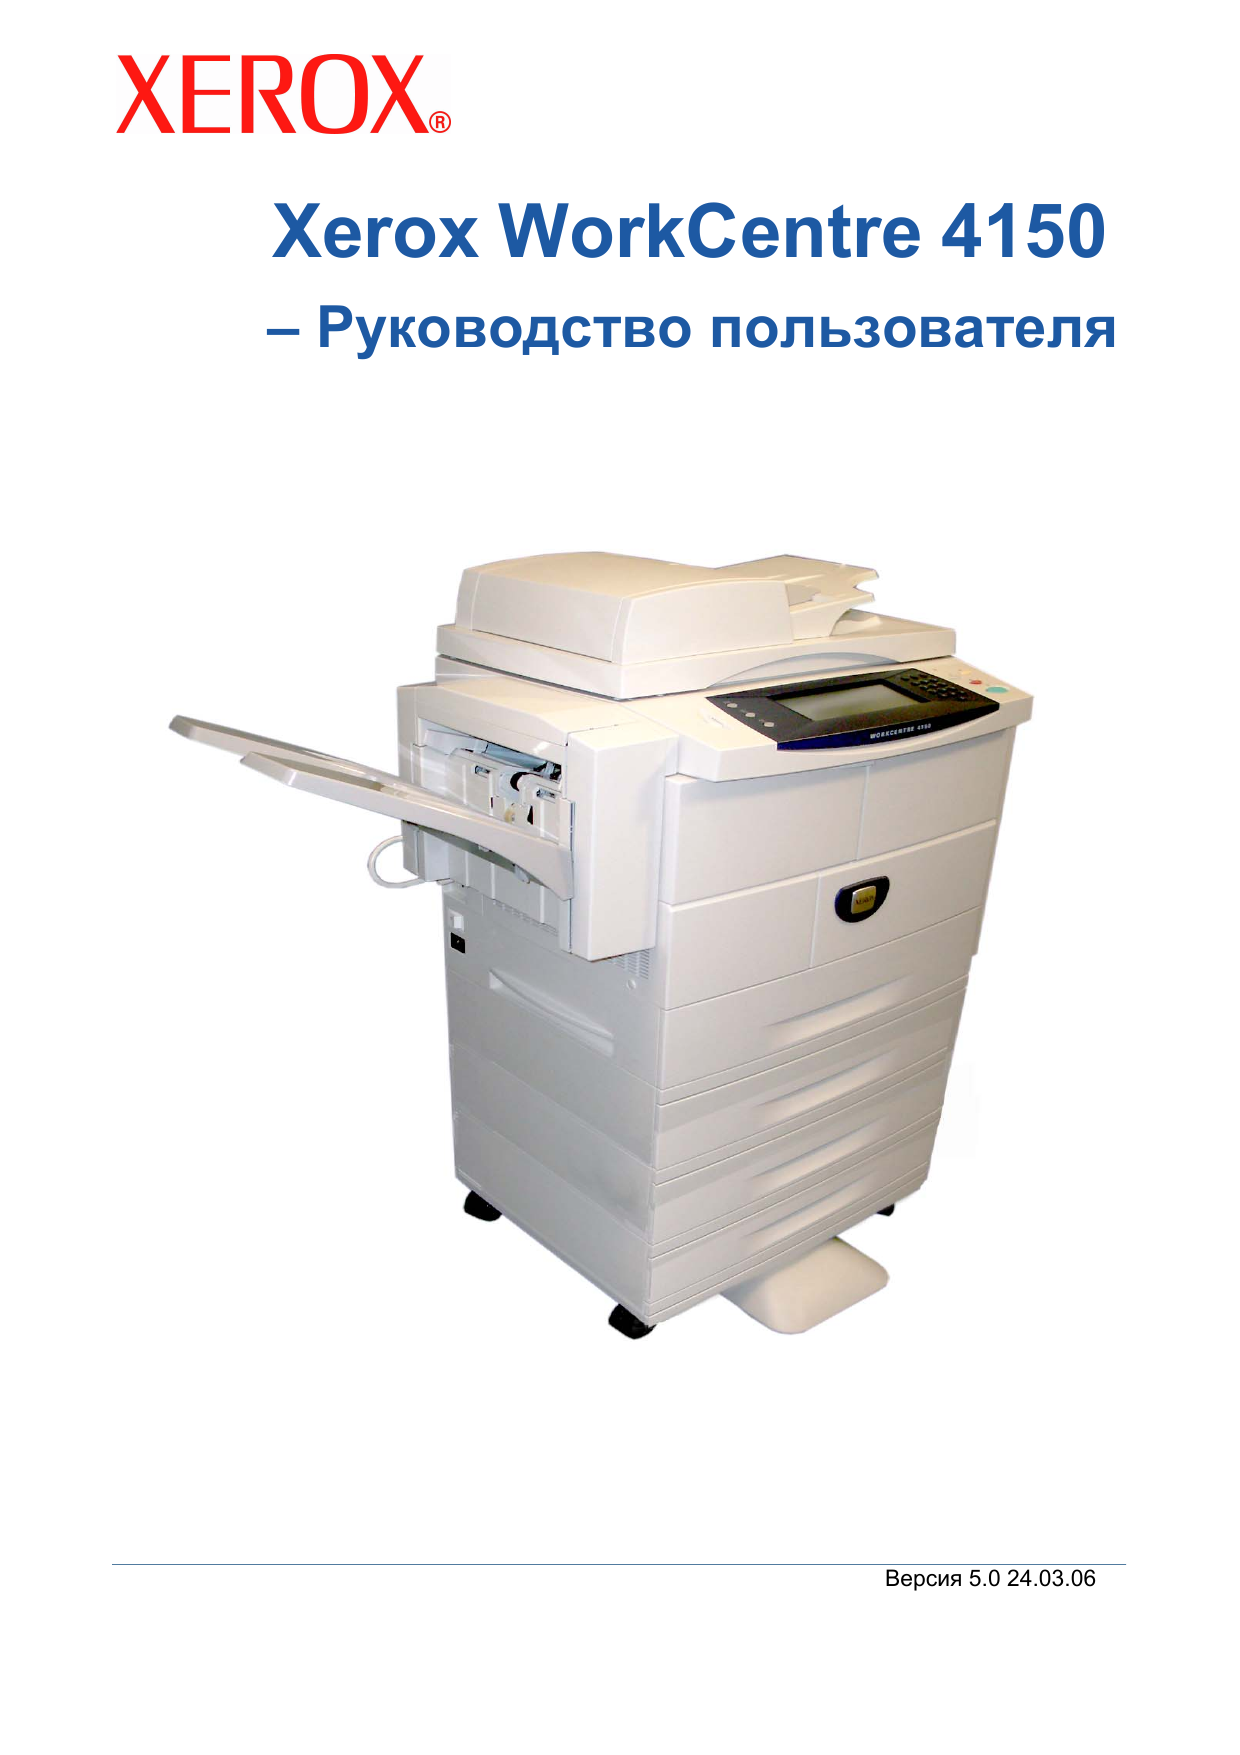 Принтер Xerox 4150. Xerox COPYCENTRE c35. Переносной ксерокс. Аппарат для ксерокса платный. Support xerox com